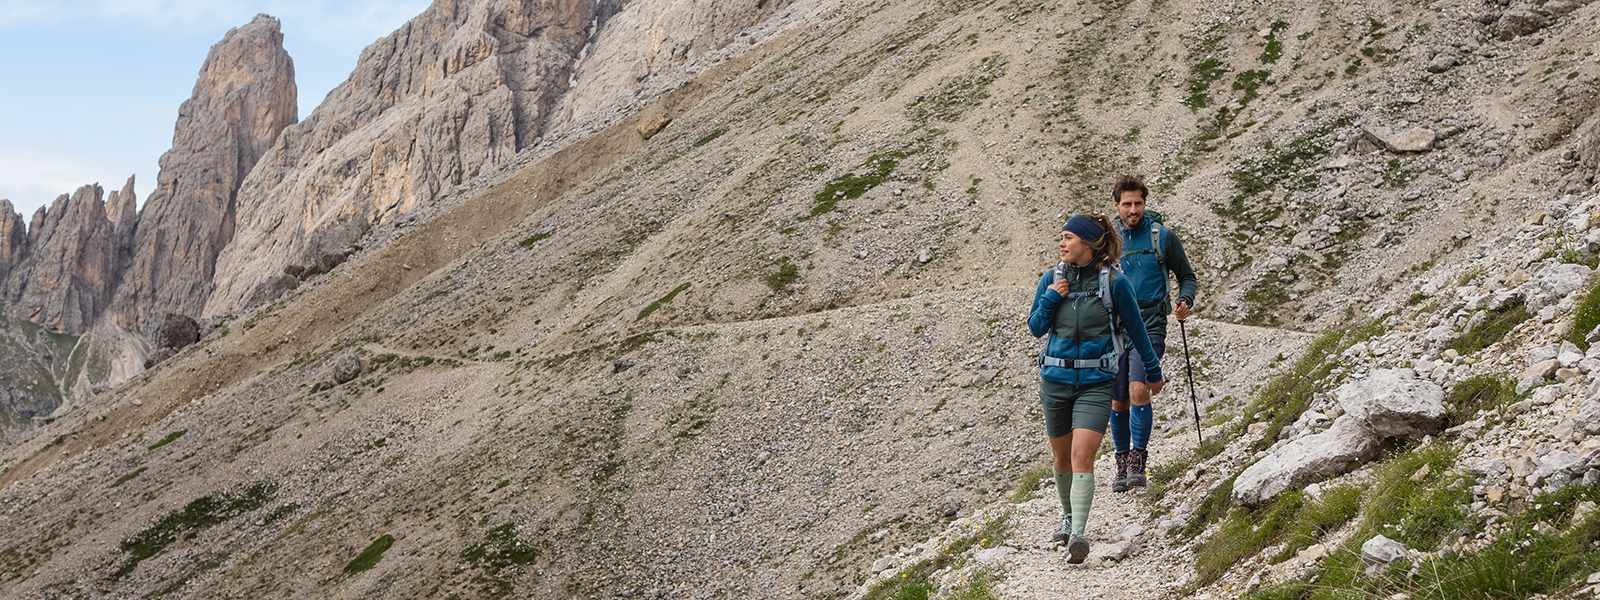 L'uomo e la donna camminano giù da una montagna con bastoncini escursionistici e portano calzini da trekking